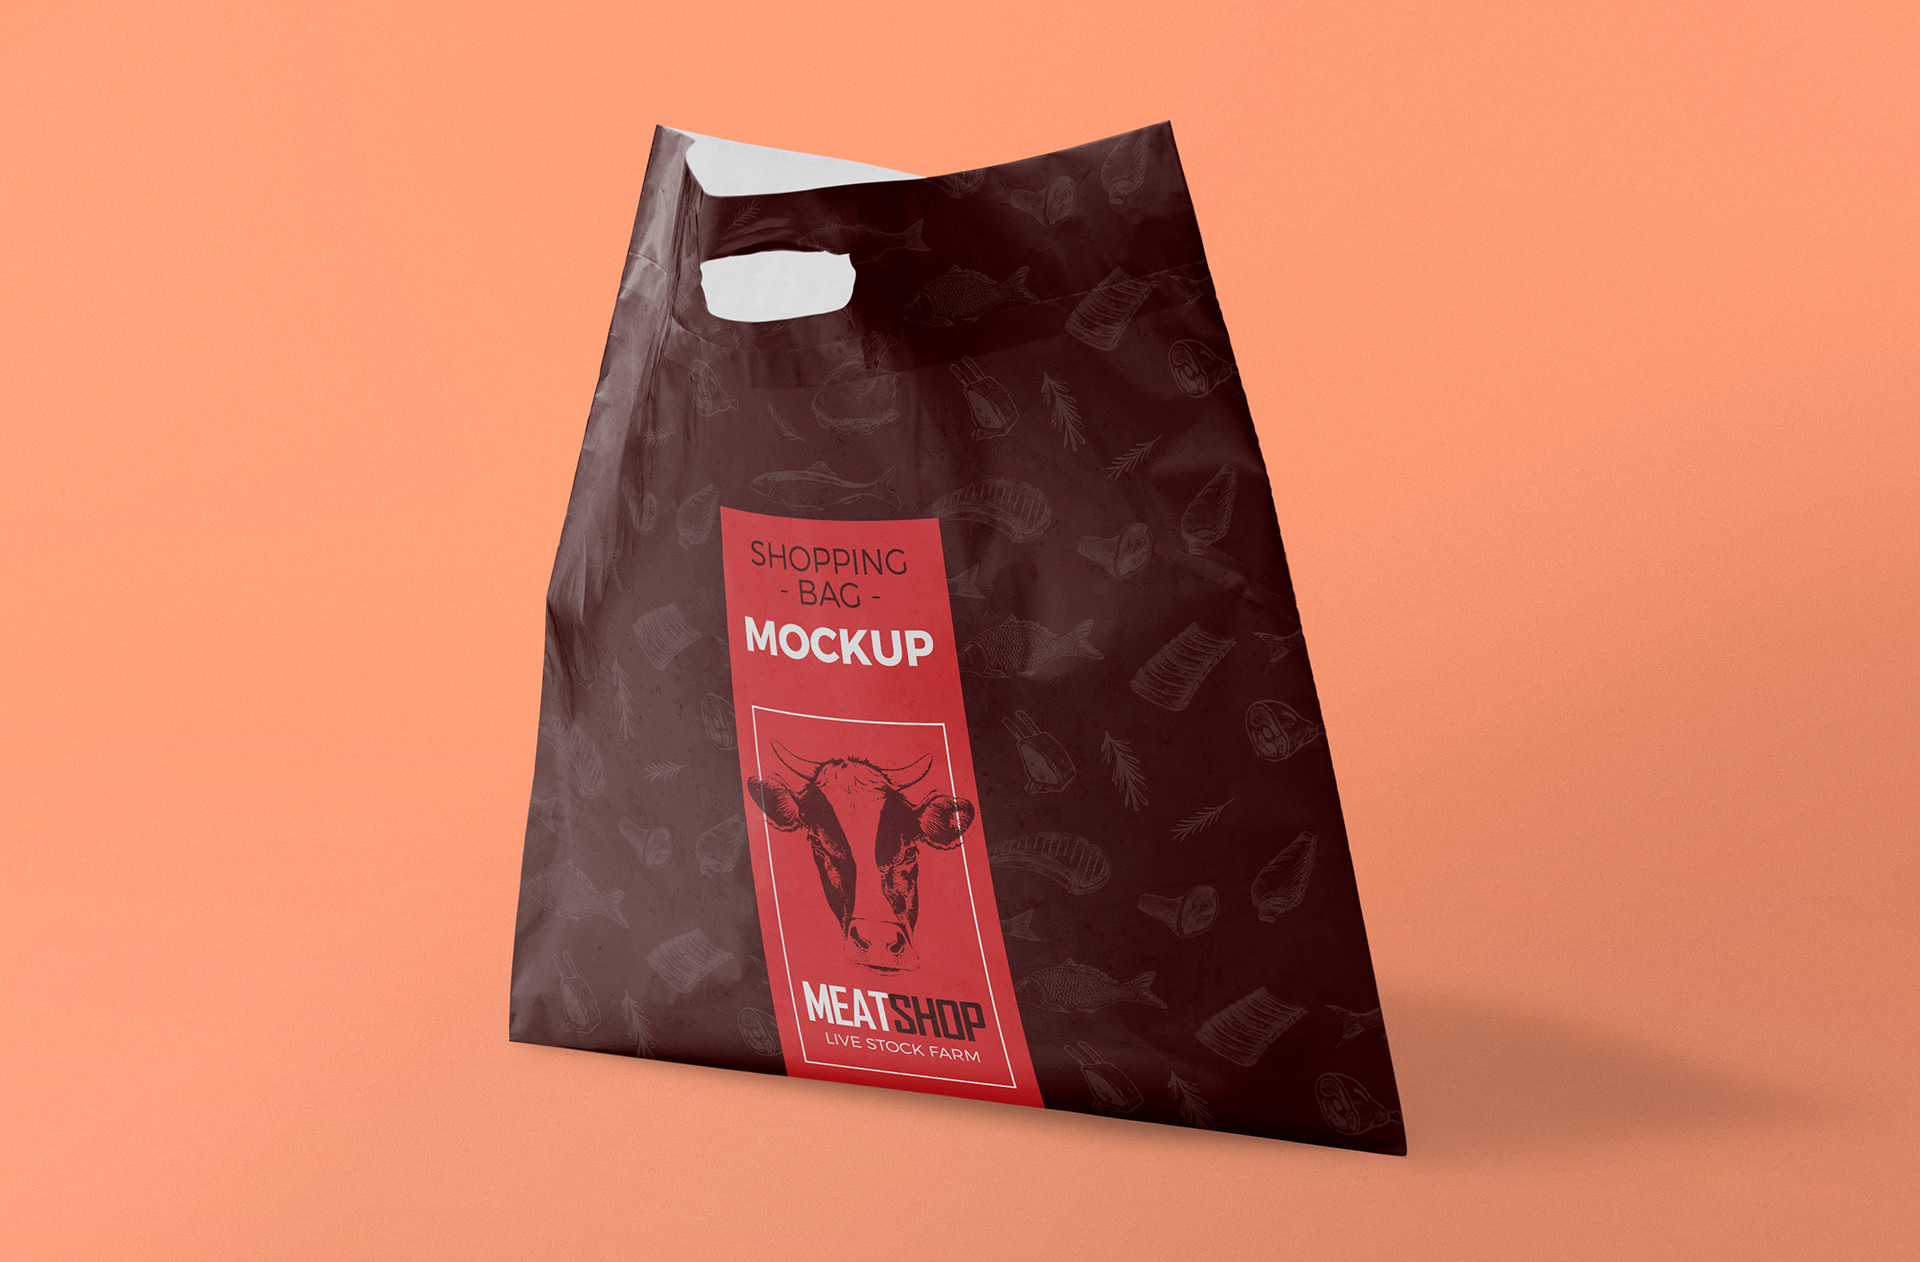 独立式塑料袋样机 Standing Plastic Bag Mockup插图2